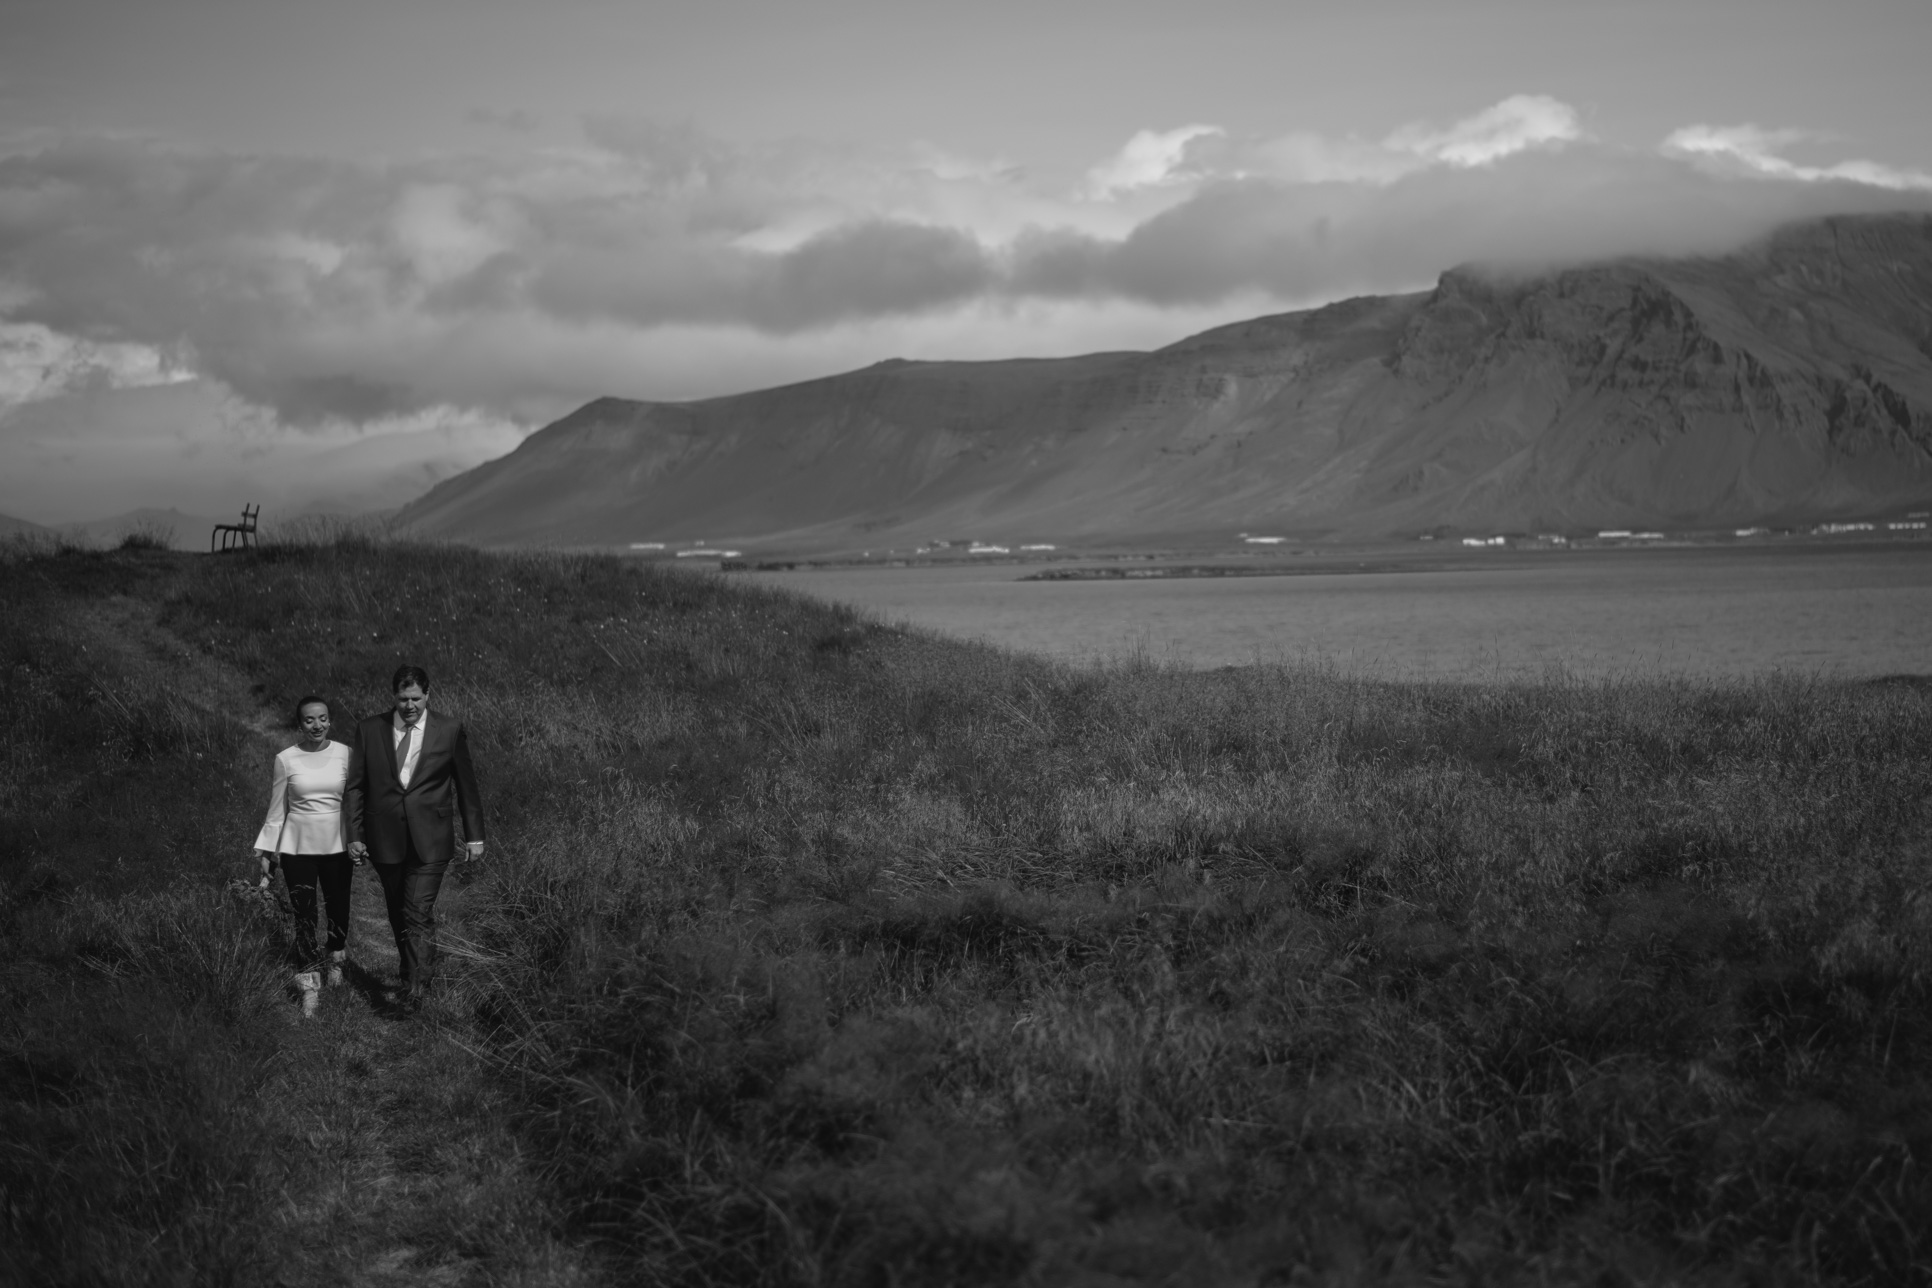 Iceland Wedding Photographer